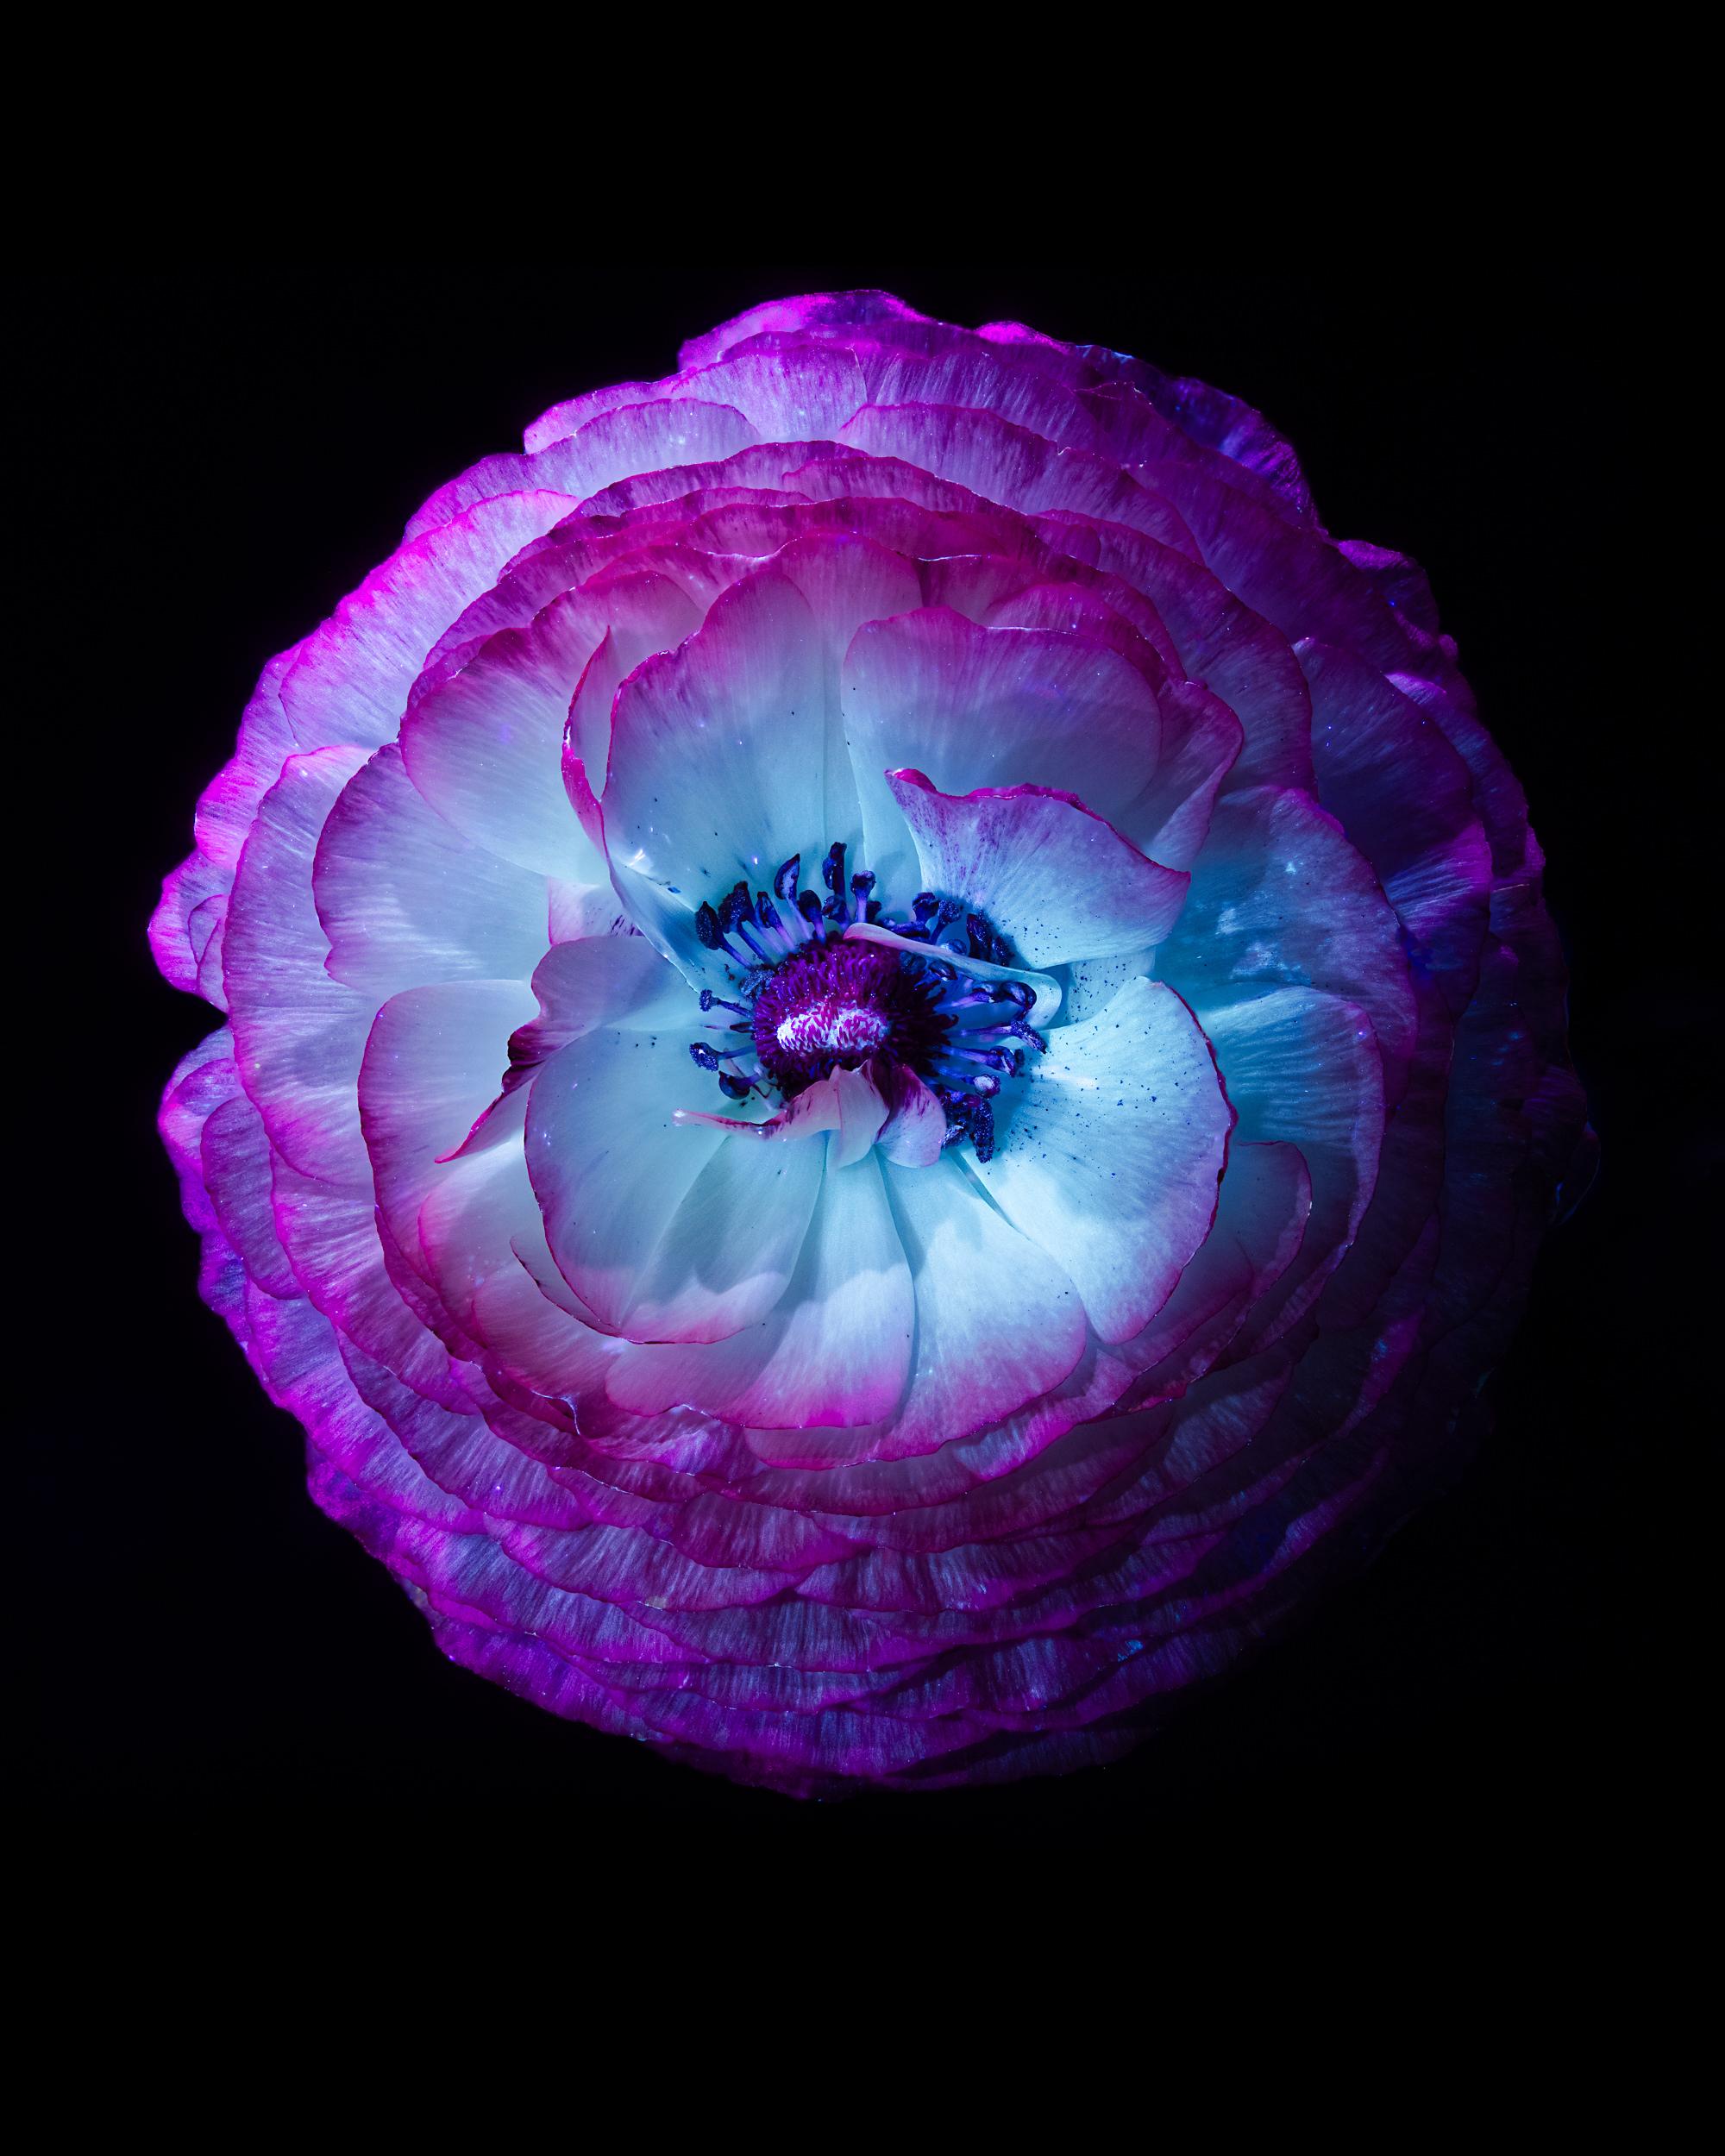 Ultraviolet-Blumen in limitierter Auflage – Eine Fotografie in limitierter Auflage – Tom Blachford & Kate Ballis